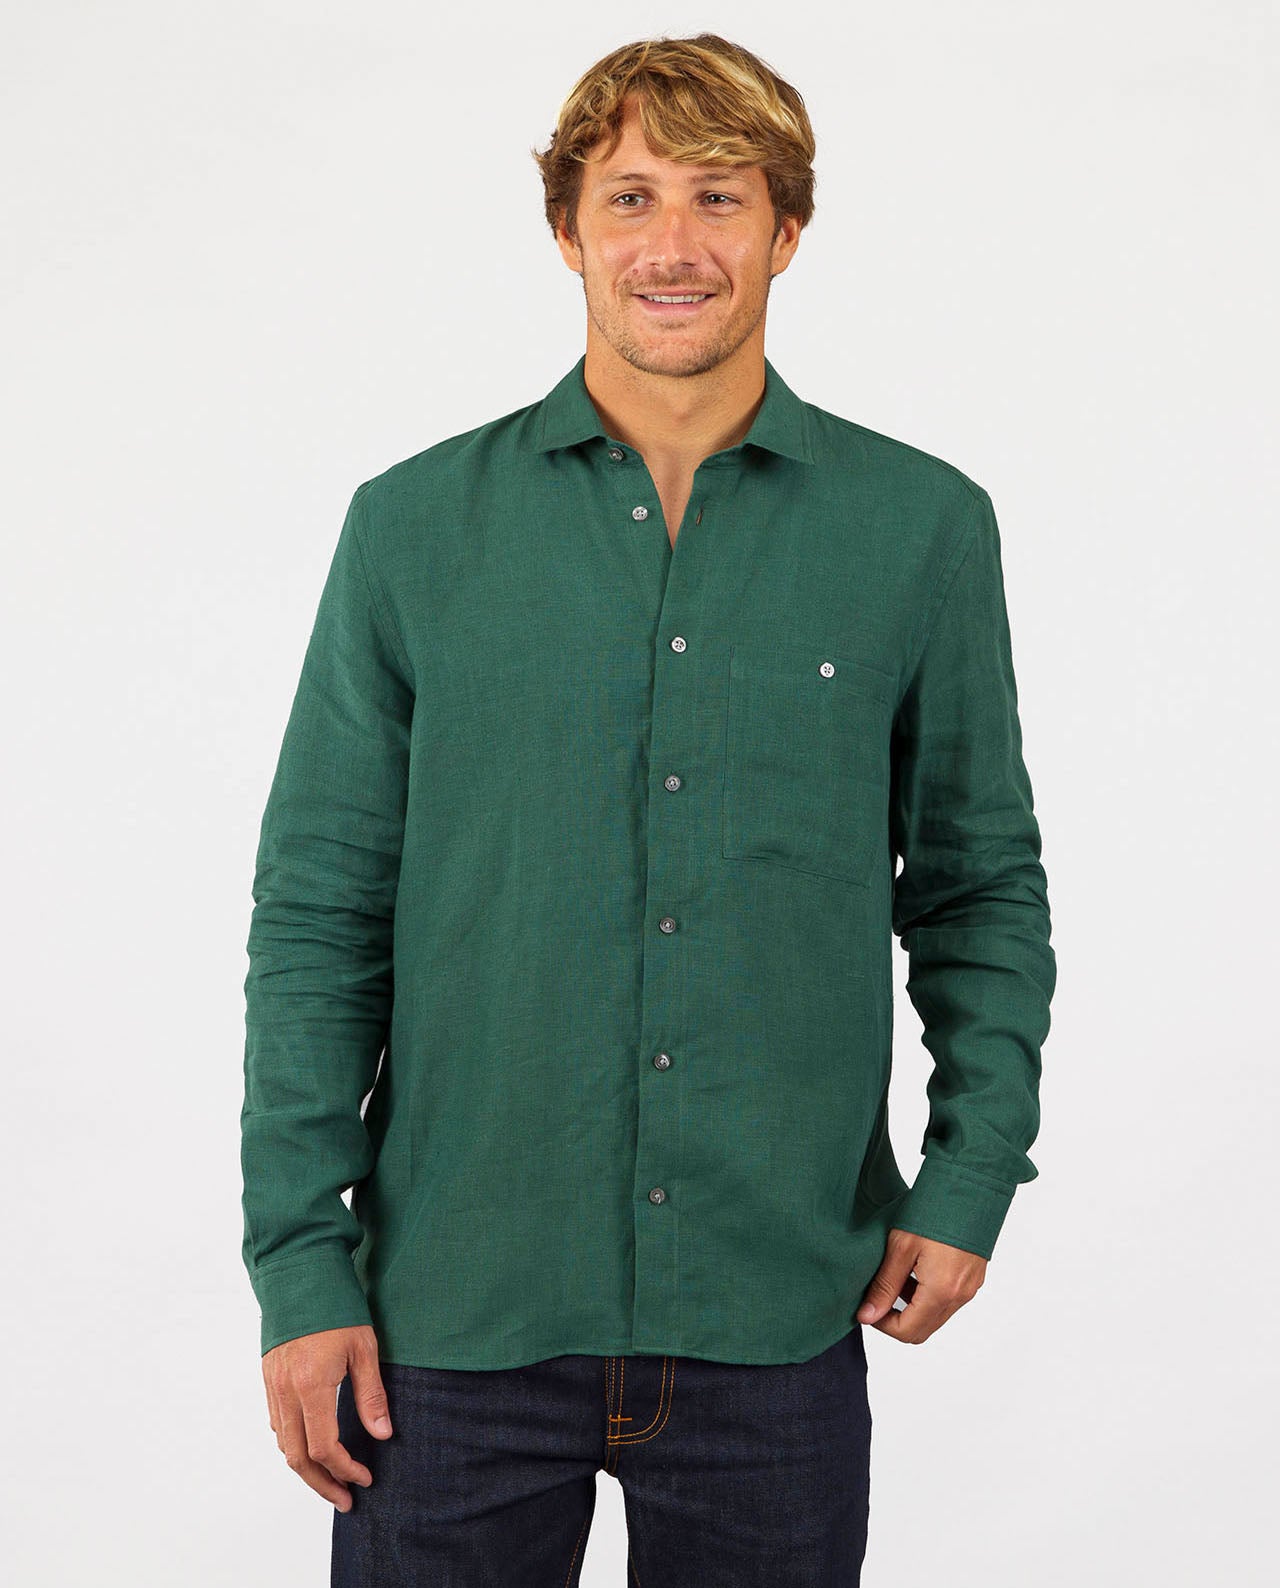 marché commun noyoco chemise droite homme lin vert jade éco-responsable fabriquée en Europe